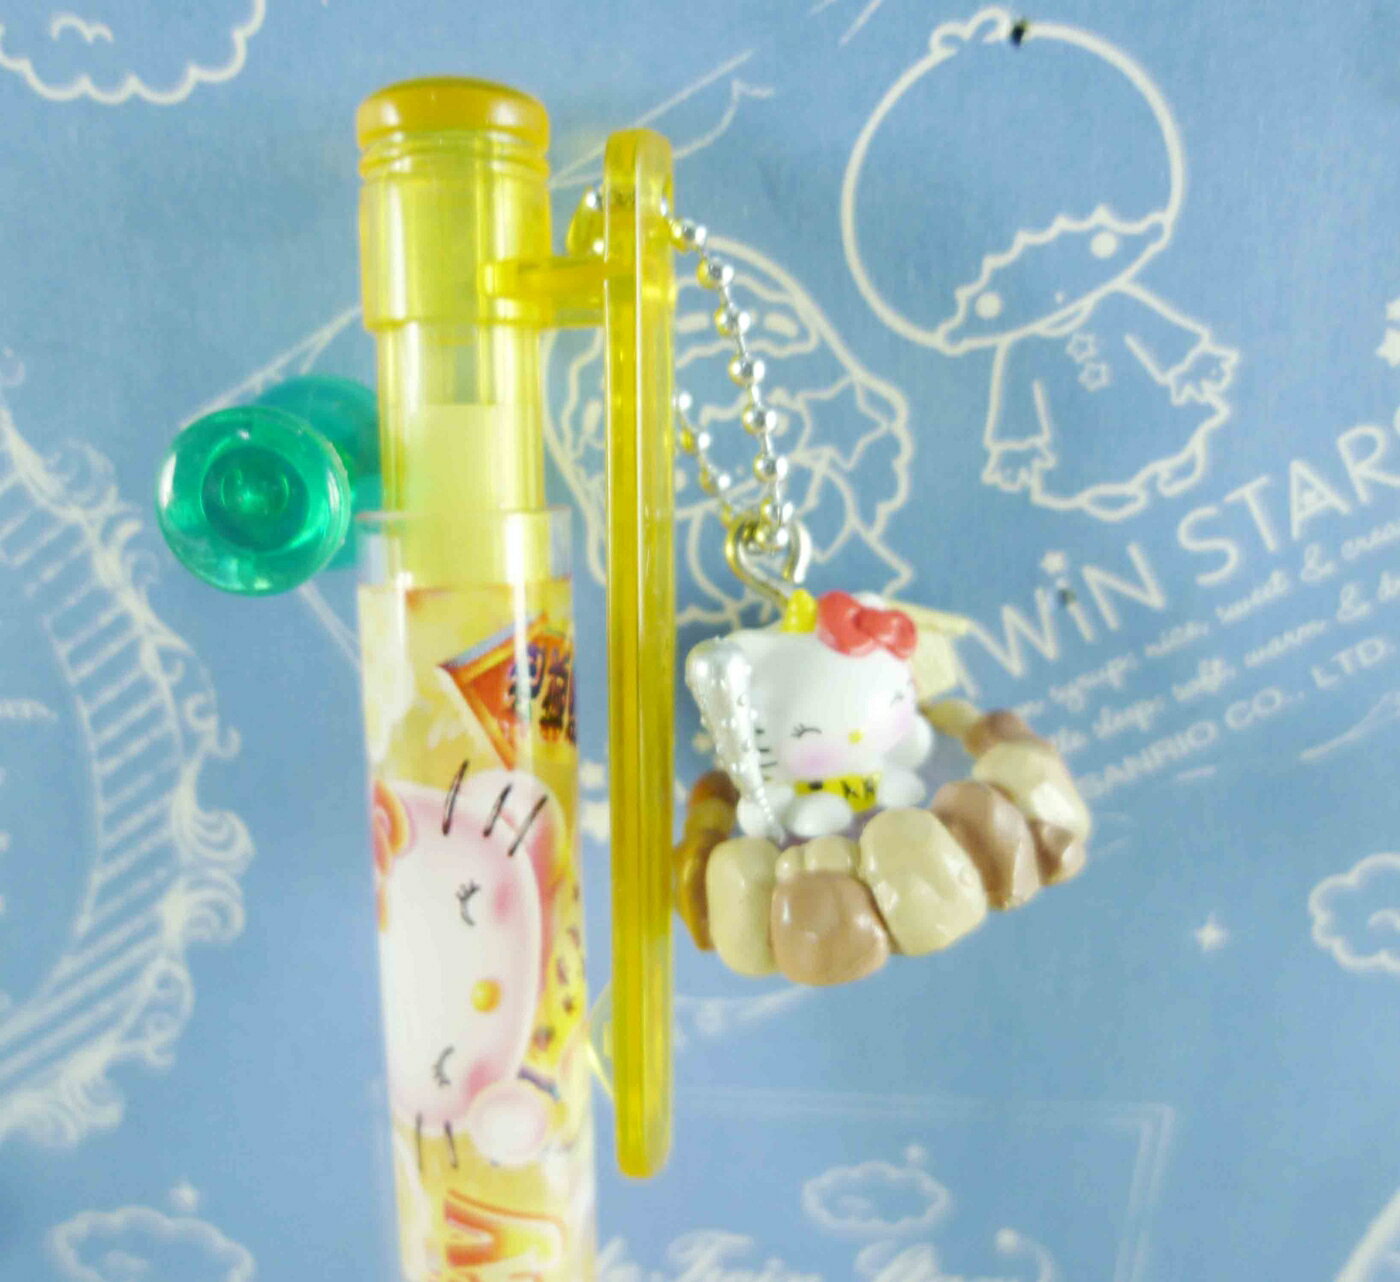 【震撼精品百貨】Hello Kitty 凱蒂貓 KITTY限定版原子筆-登別圖案 震撼日式精品百貨